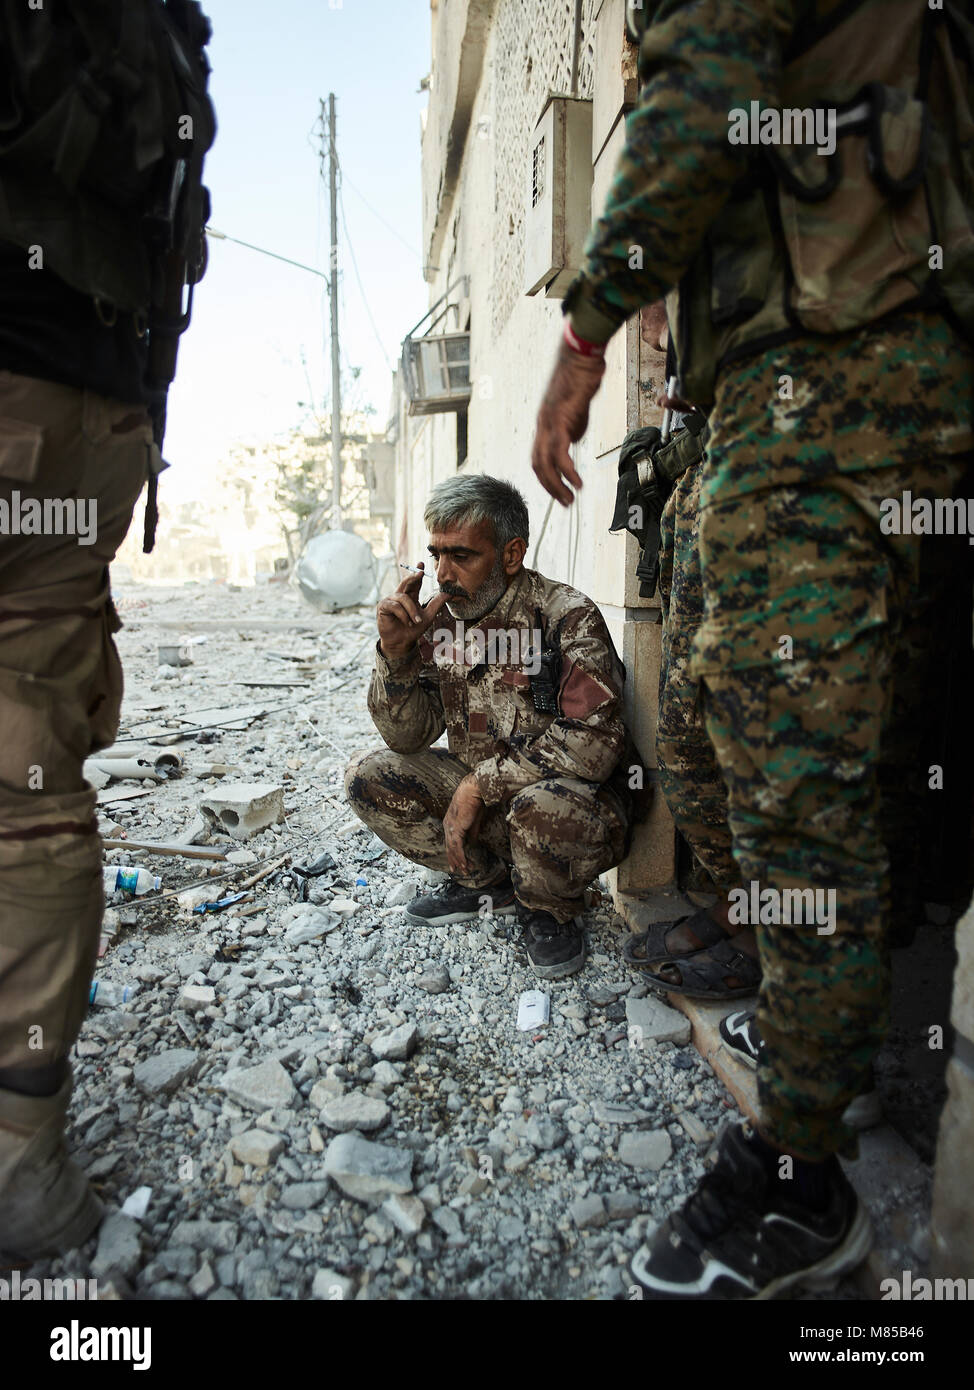 Ein YPG Commander wartet auf Nachrichten über eine verletzte Soldaten von der Front. Die Stadt von raqqa im östlichen Syrien hat unter islamischen Staat militanten Kontrolle seit März 2013. Die Stadt hat schließlich von Ypg Kräfte im Oktober 2017 befreit wurde. Stockfoto